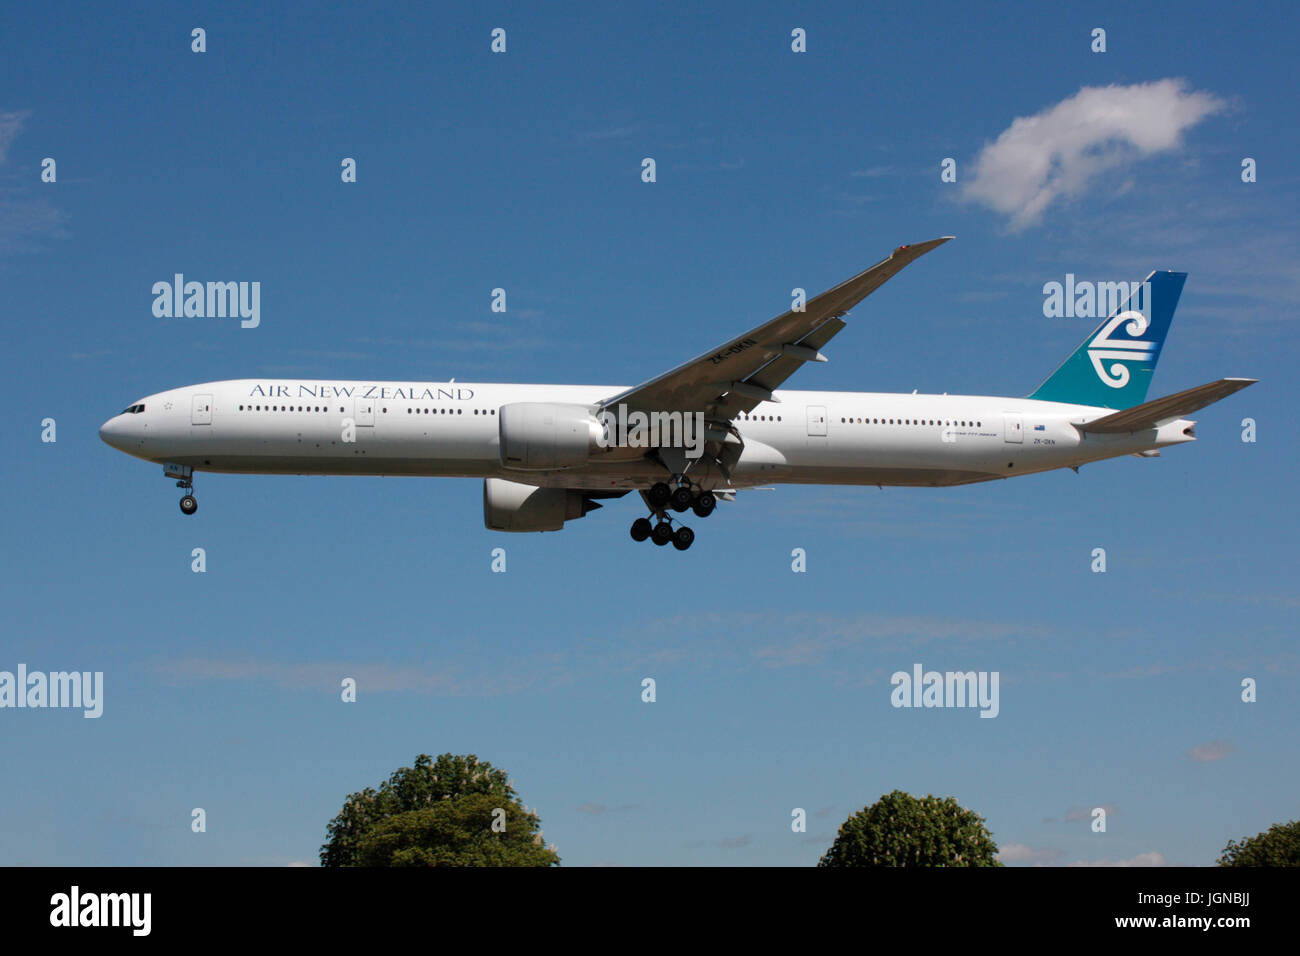 Les voyages aériens internationaux. Air New Zealand Boeing 777-300ER avion long courrier en approche à Heathrow après un vol intercontinental Banque D'Images